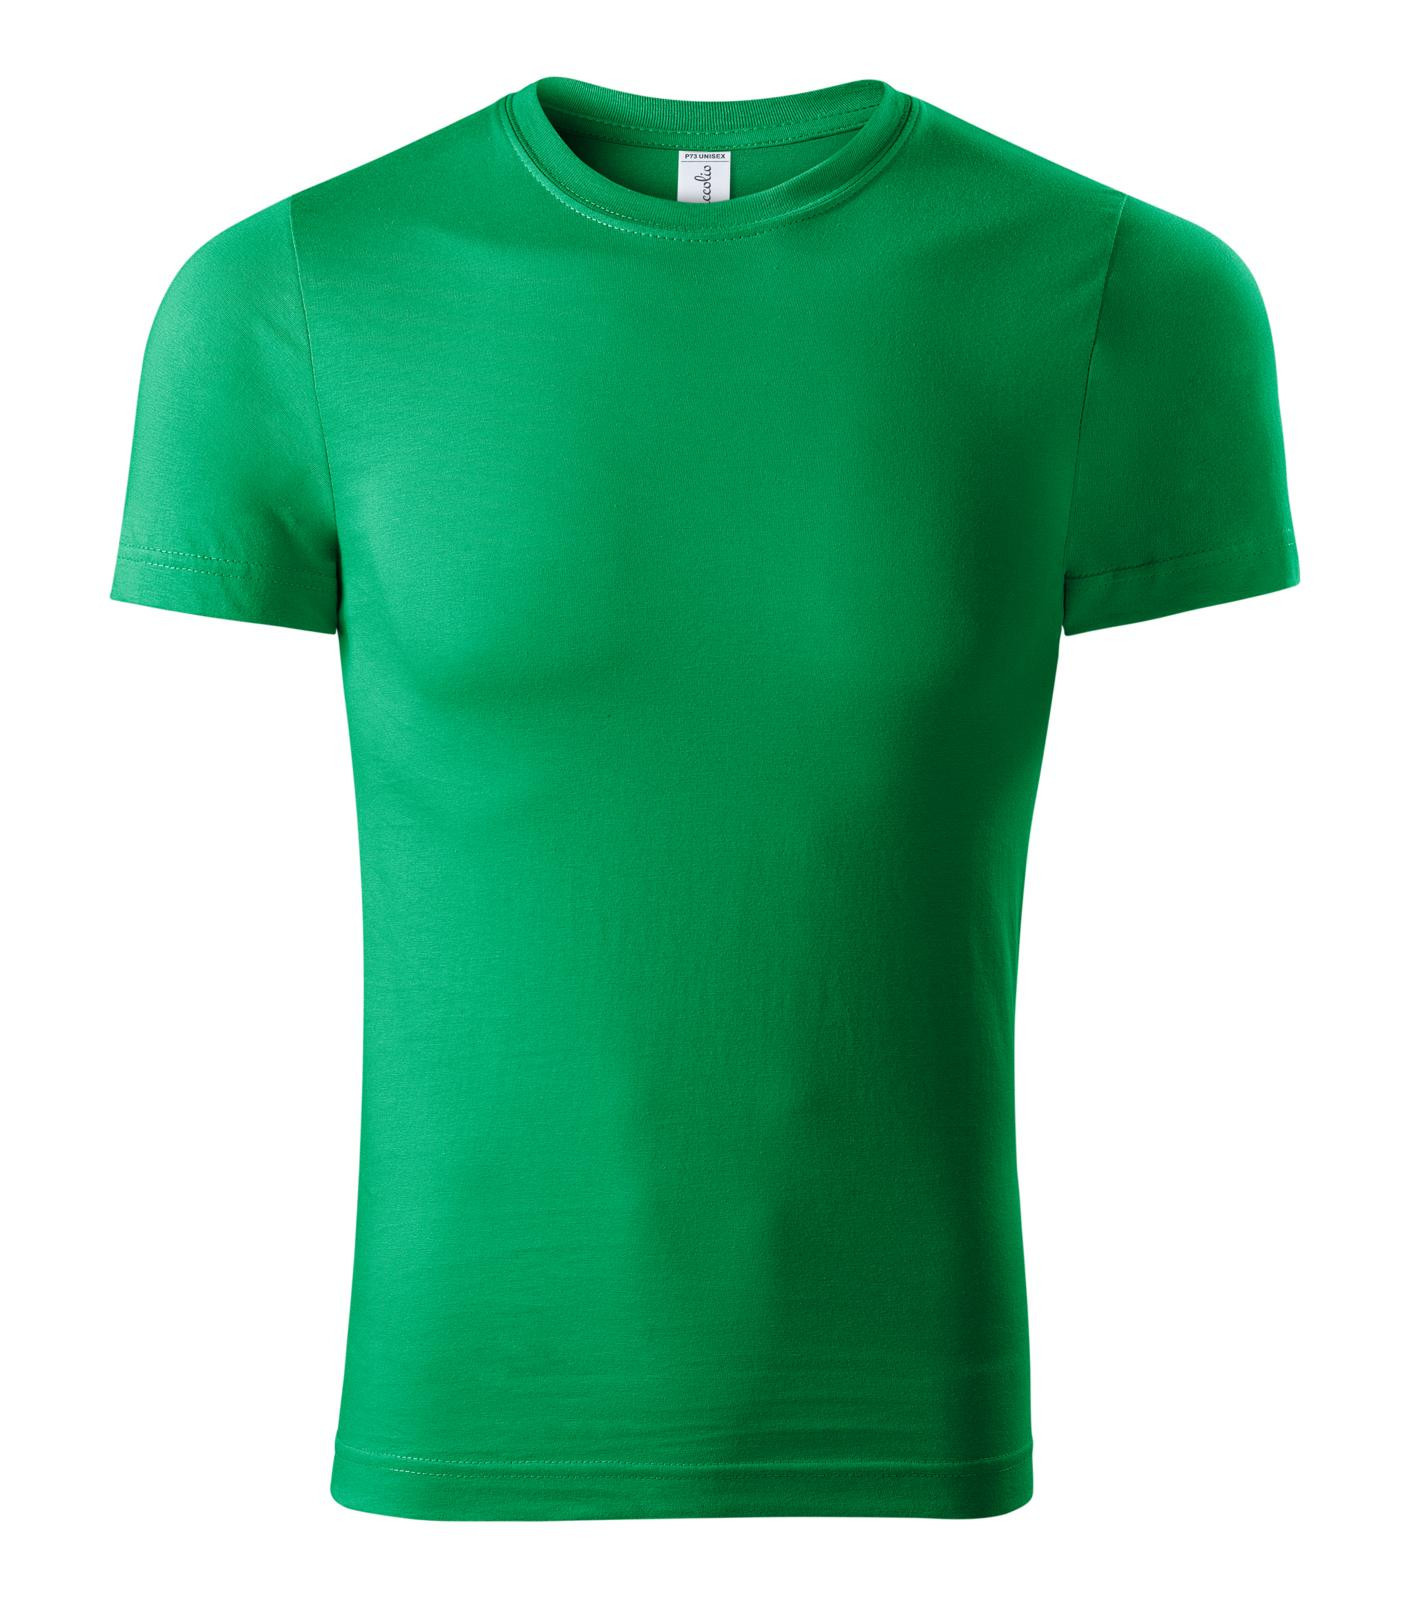 Unisex tričko Piccolio Paint P73 - veľkosť: 4XL, farba: trávová zelená